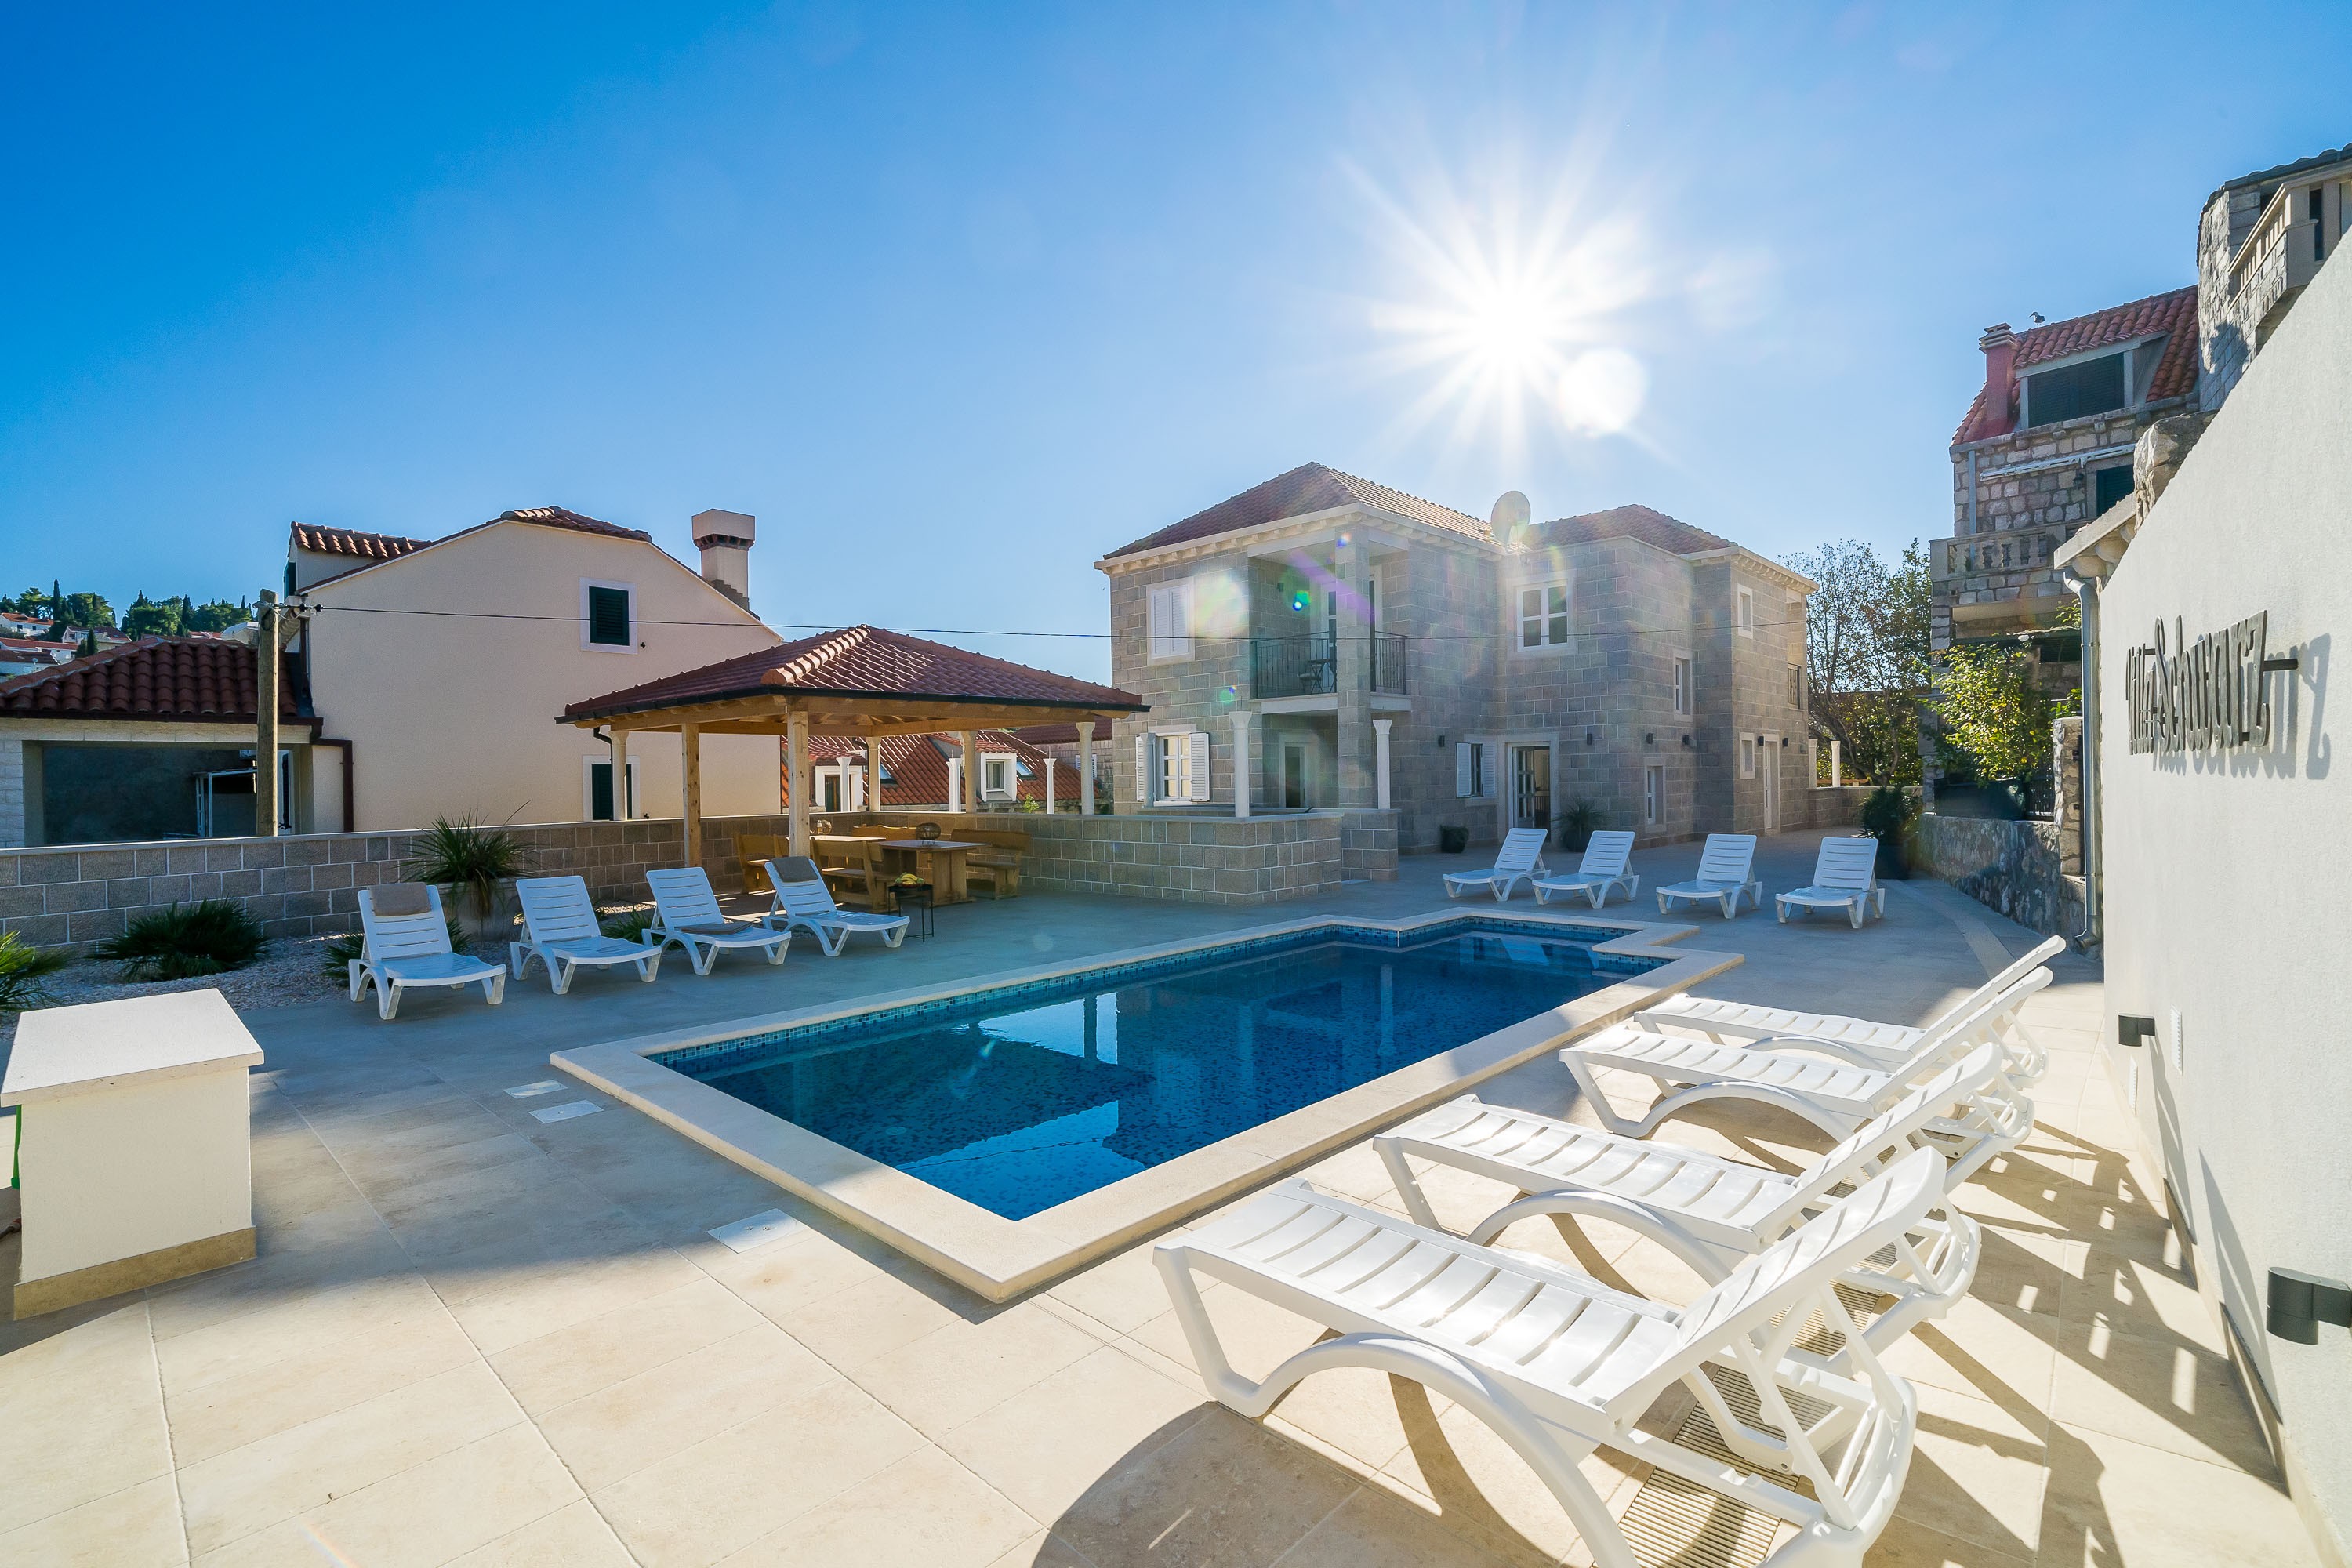 Residence & Pool Villa Schwarz Suites - One Be  in Kroatien